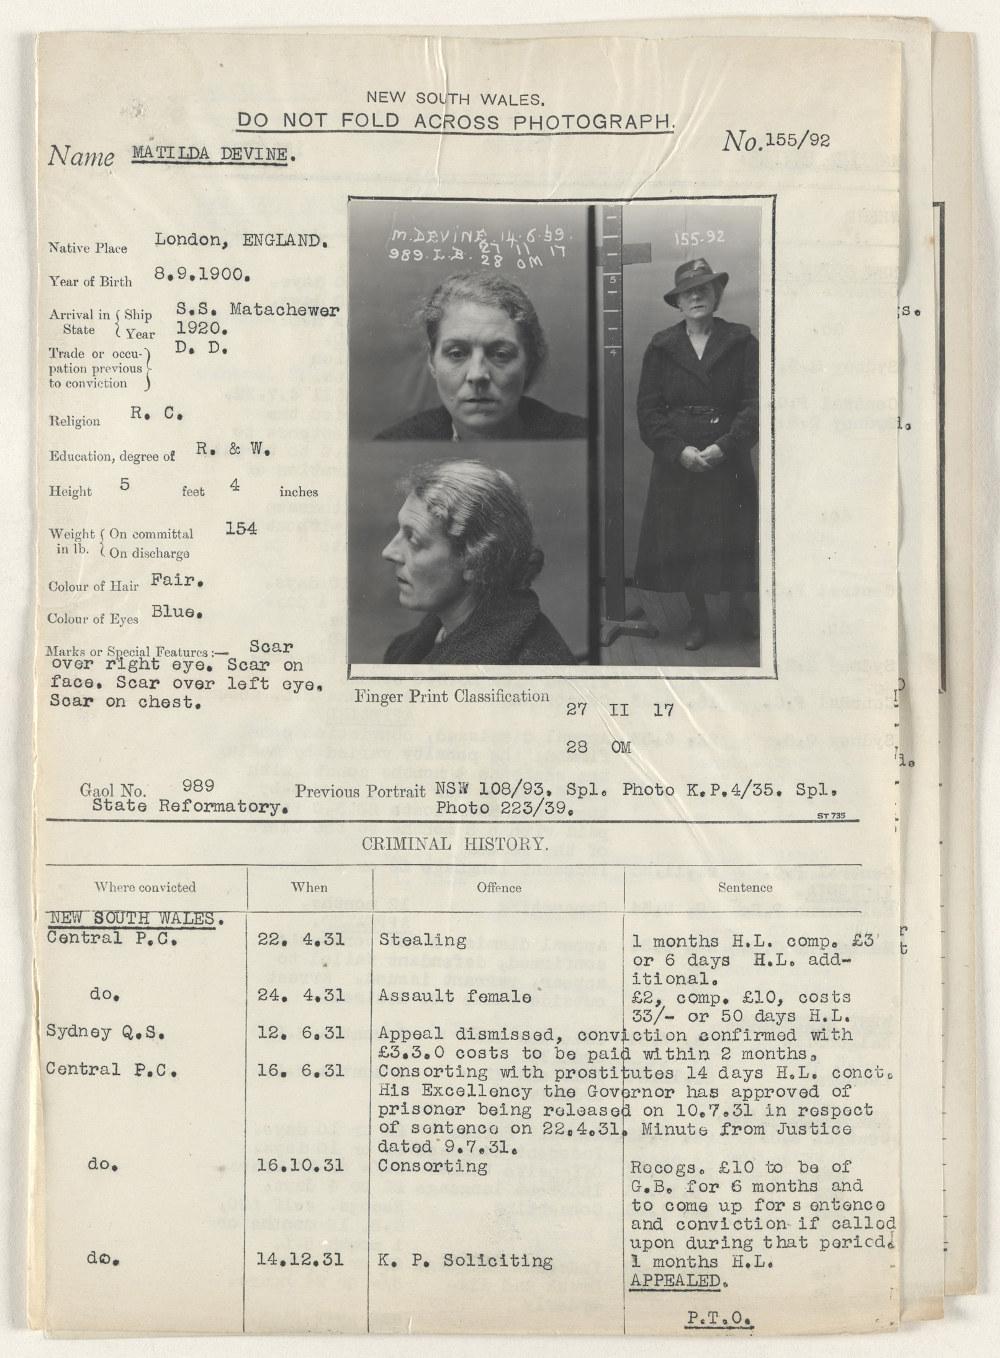 Mugshots of Tilly Devine showing her criminal history